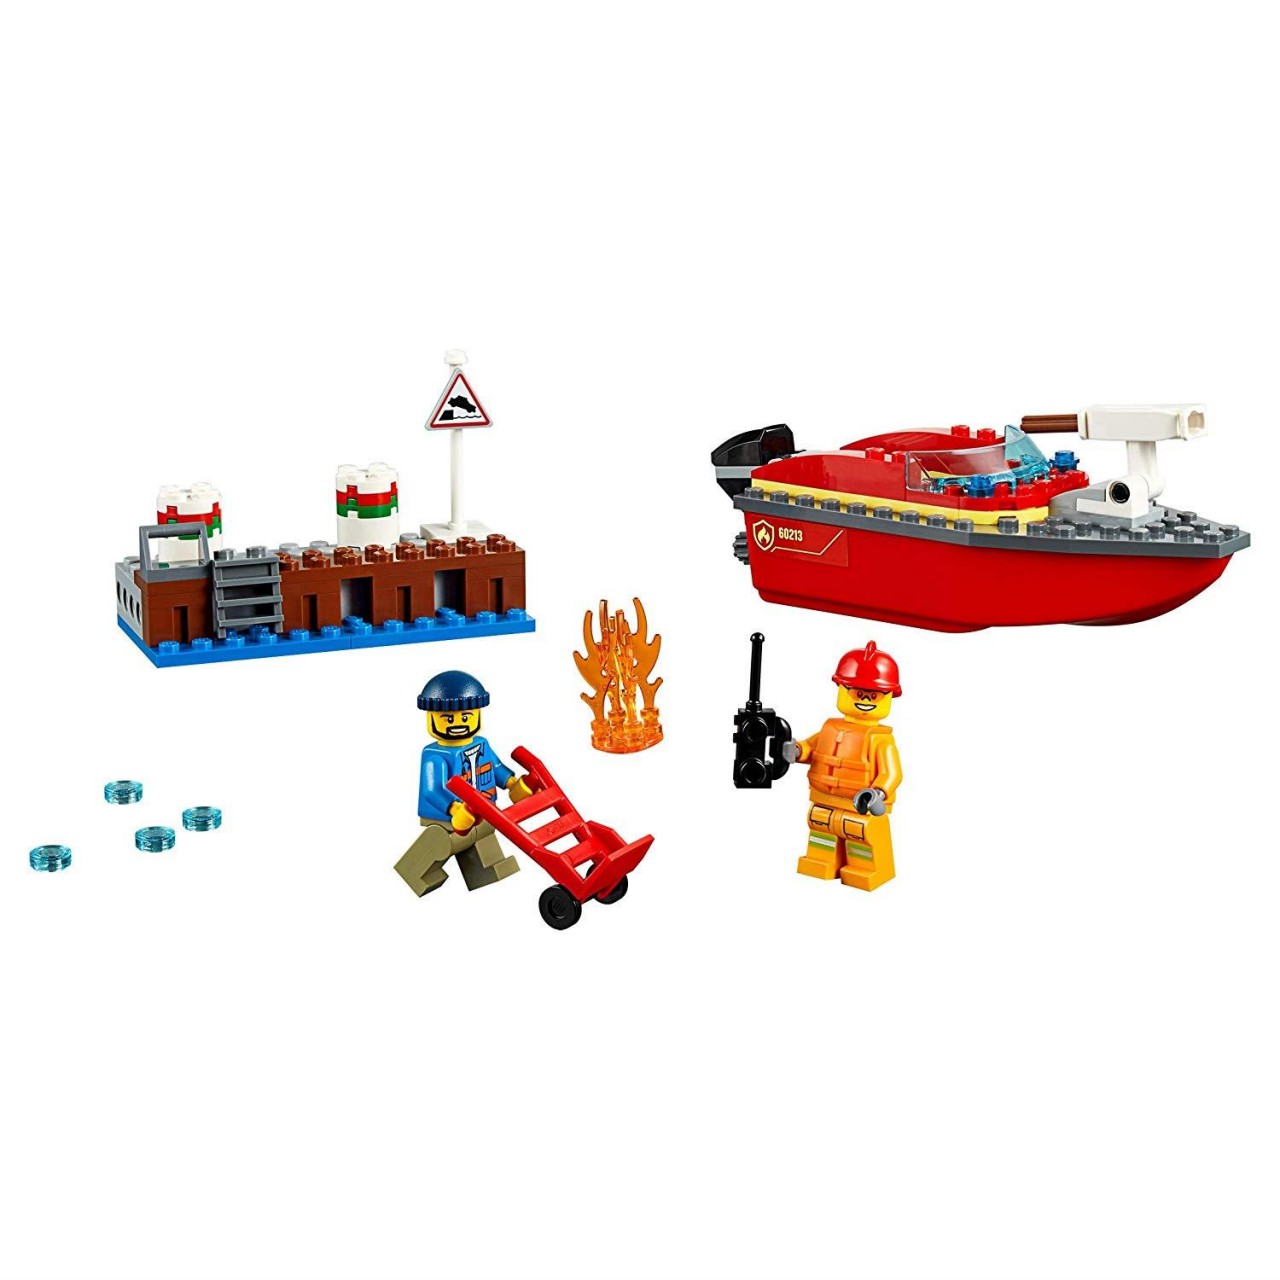 LEGO CITY 60213 Feuerwehr am Hafen